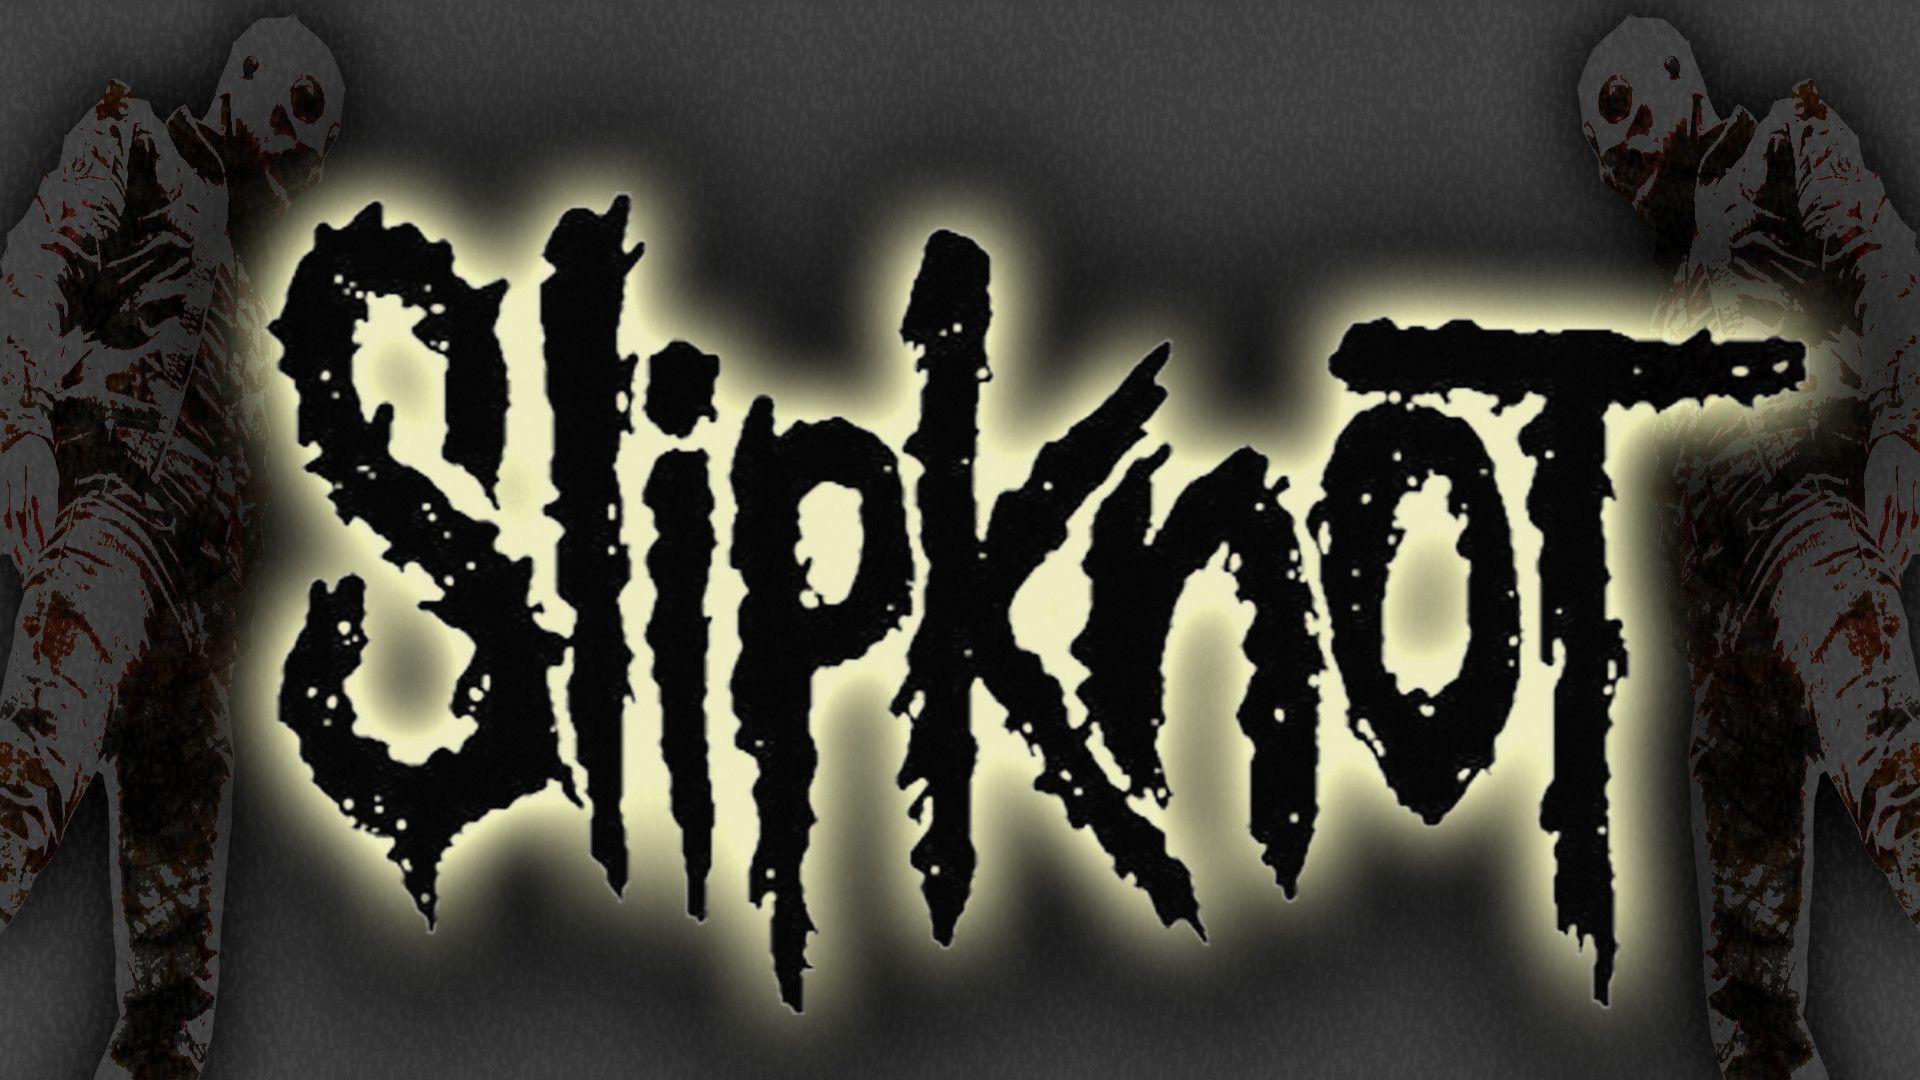 Slipknot Wallpaper Free. Large HD Wallpaper Database